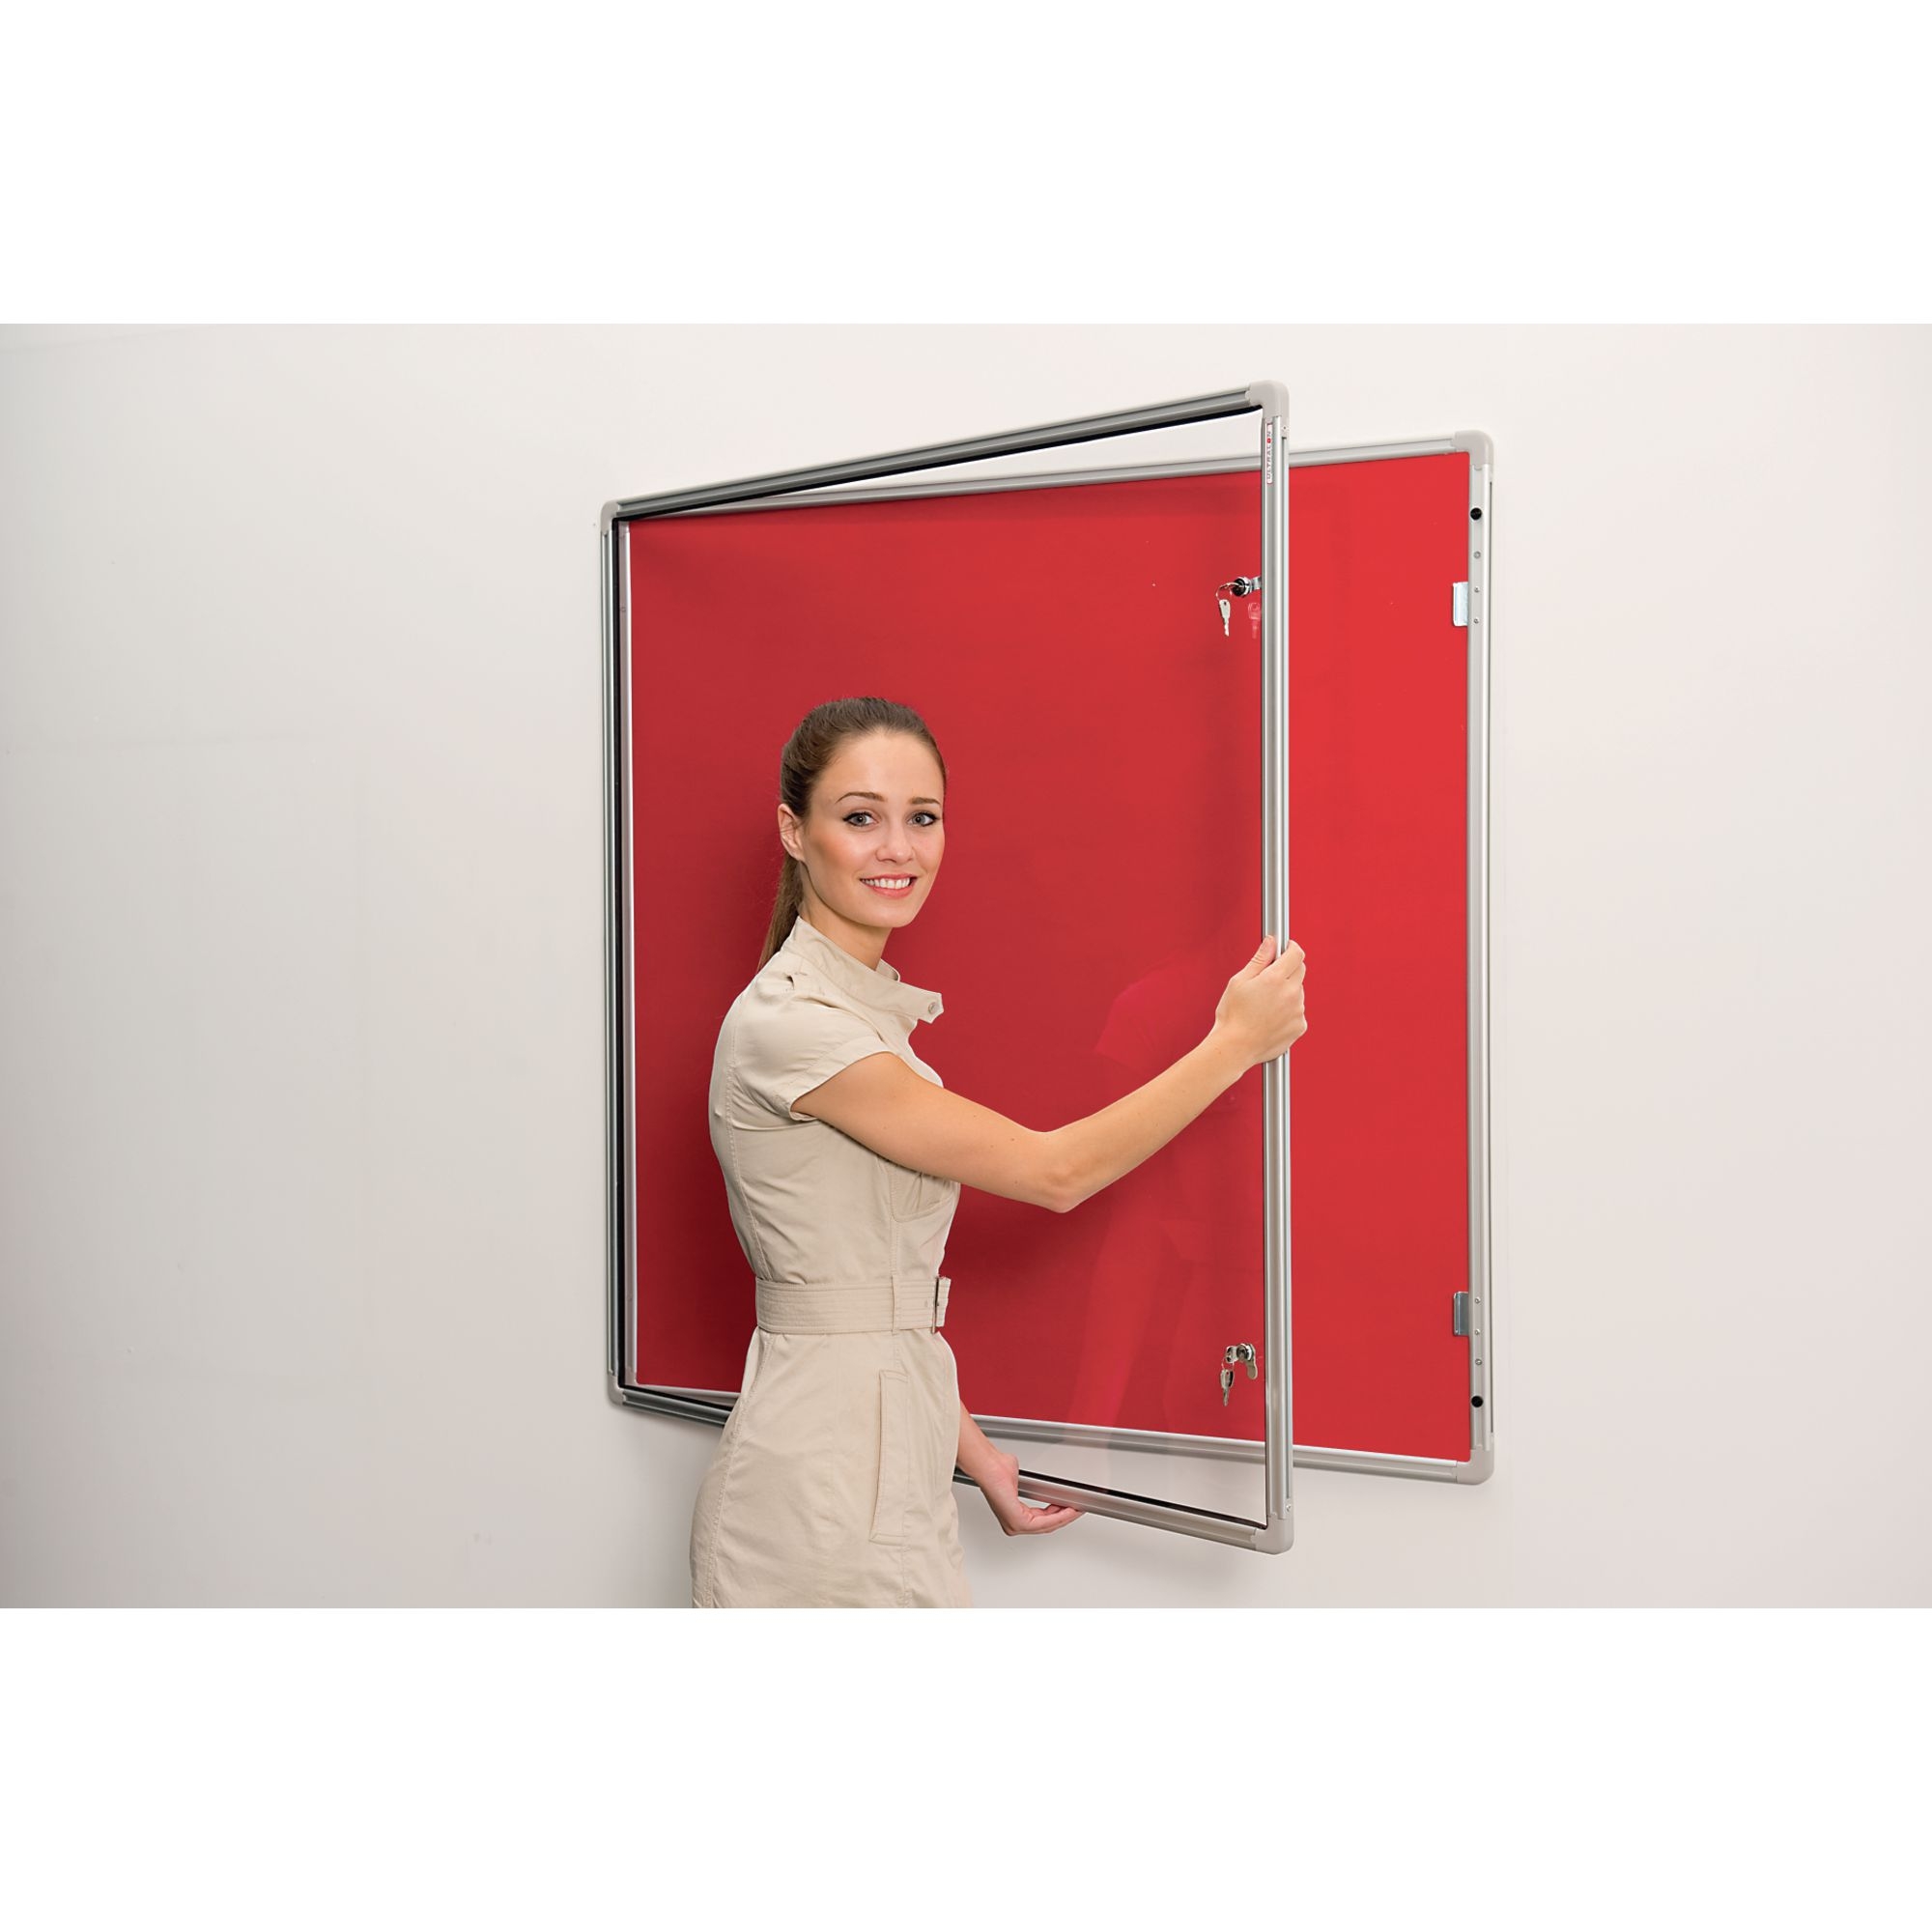 Lockable Aluminium Framed Noticeboards - Red 12x9